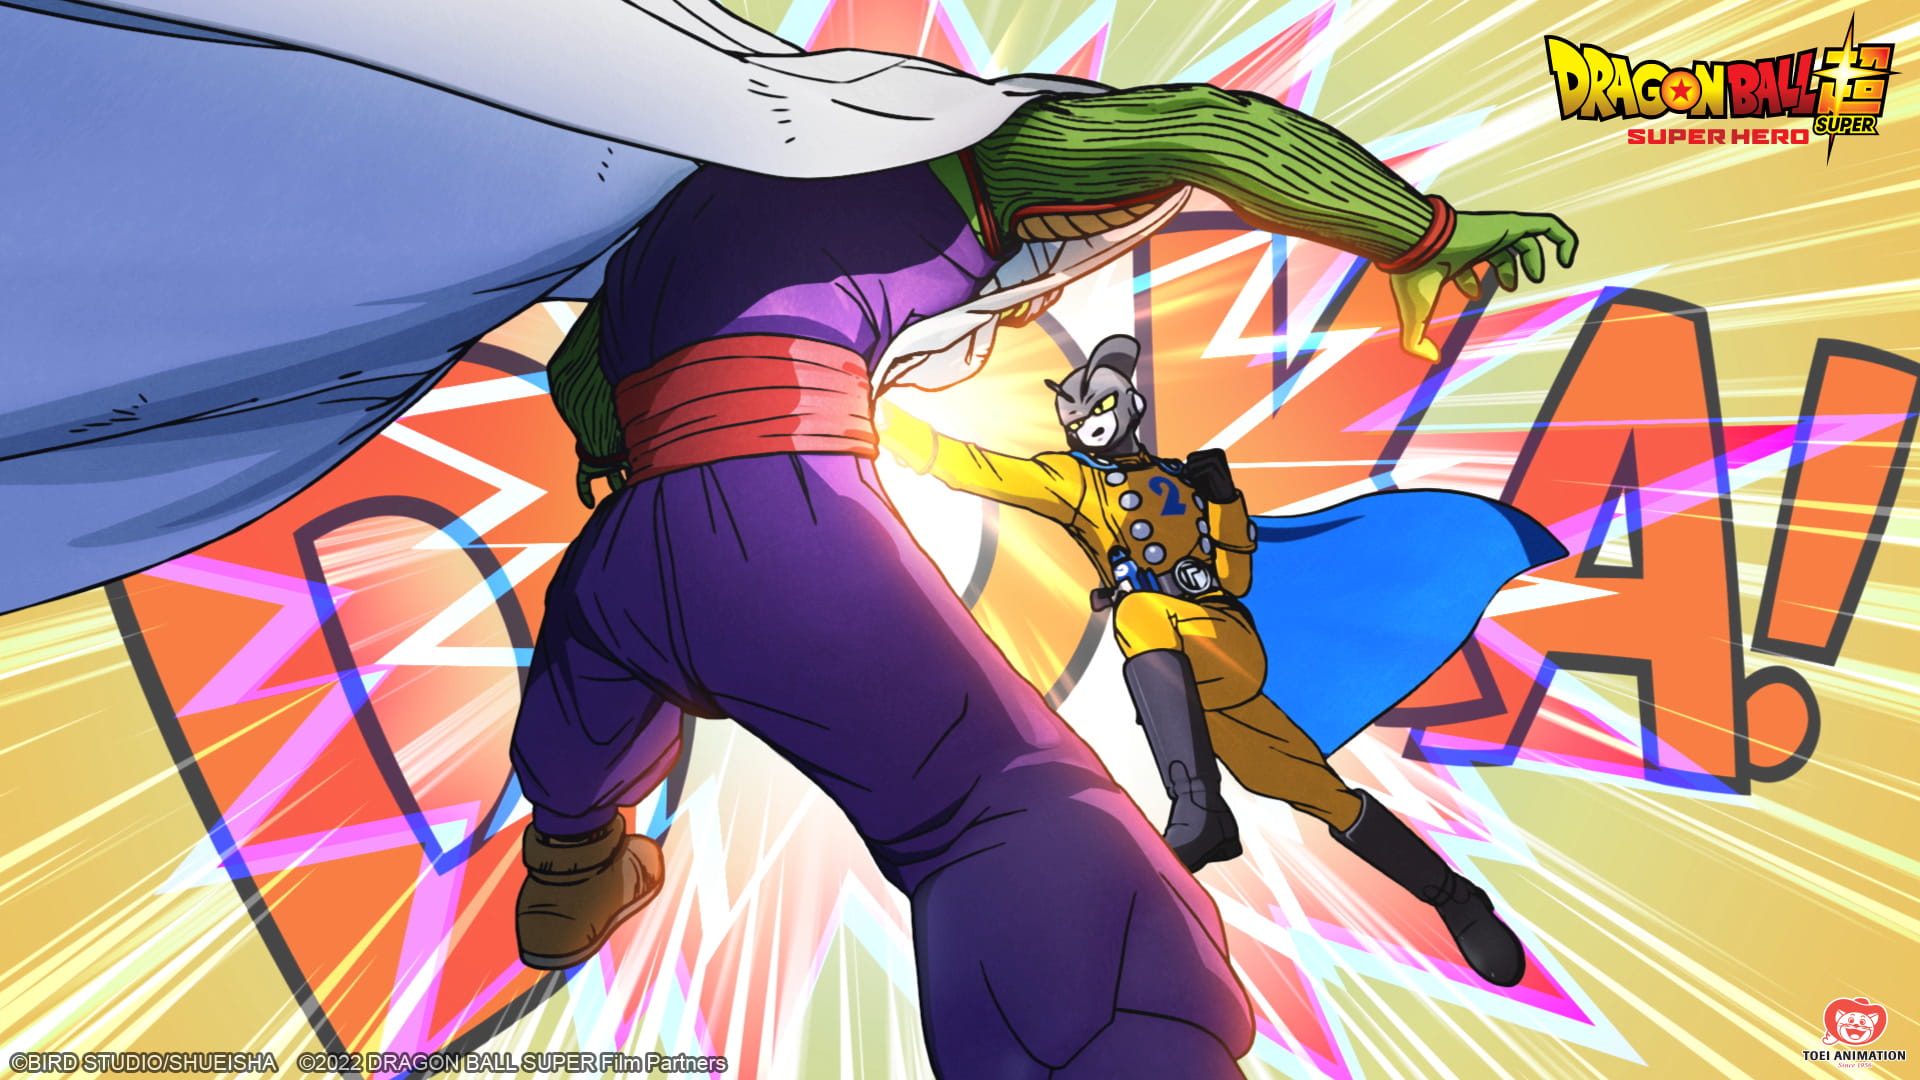 Dragon Ball Super: Super Hero se estrenará en Crunchyroll mundialmente